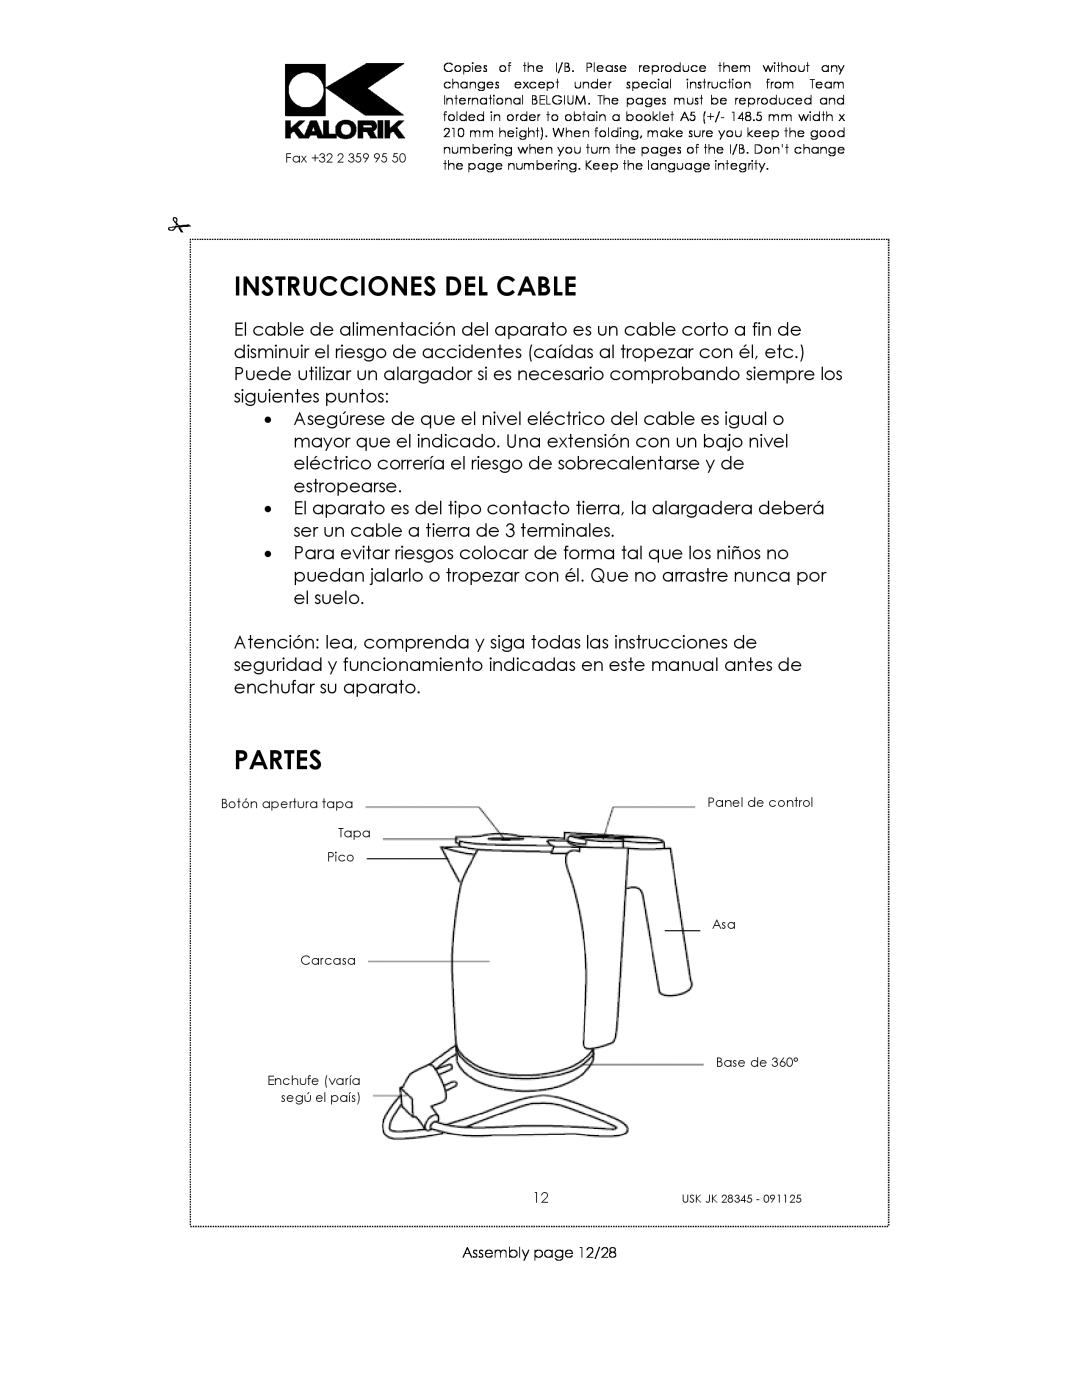 Kalorik USK JK 28345 manual Instrucciones Del Cable, Partes, Assembly page 12/28 